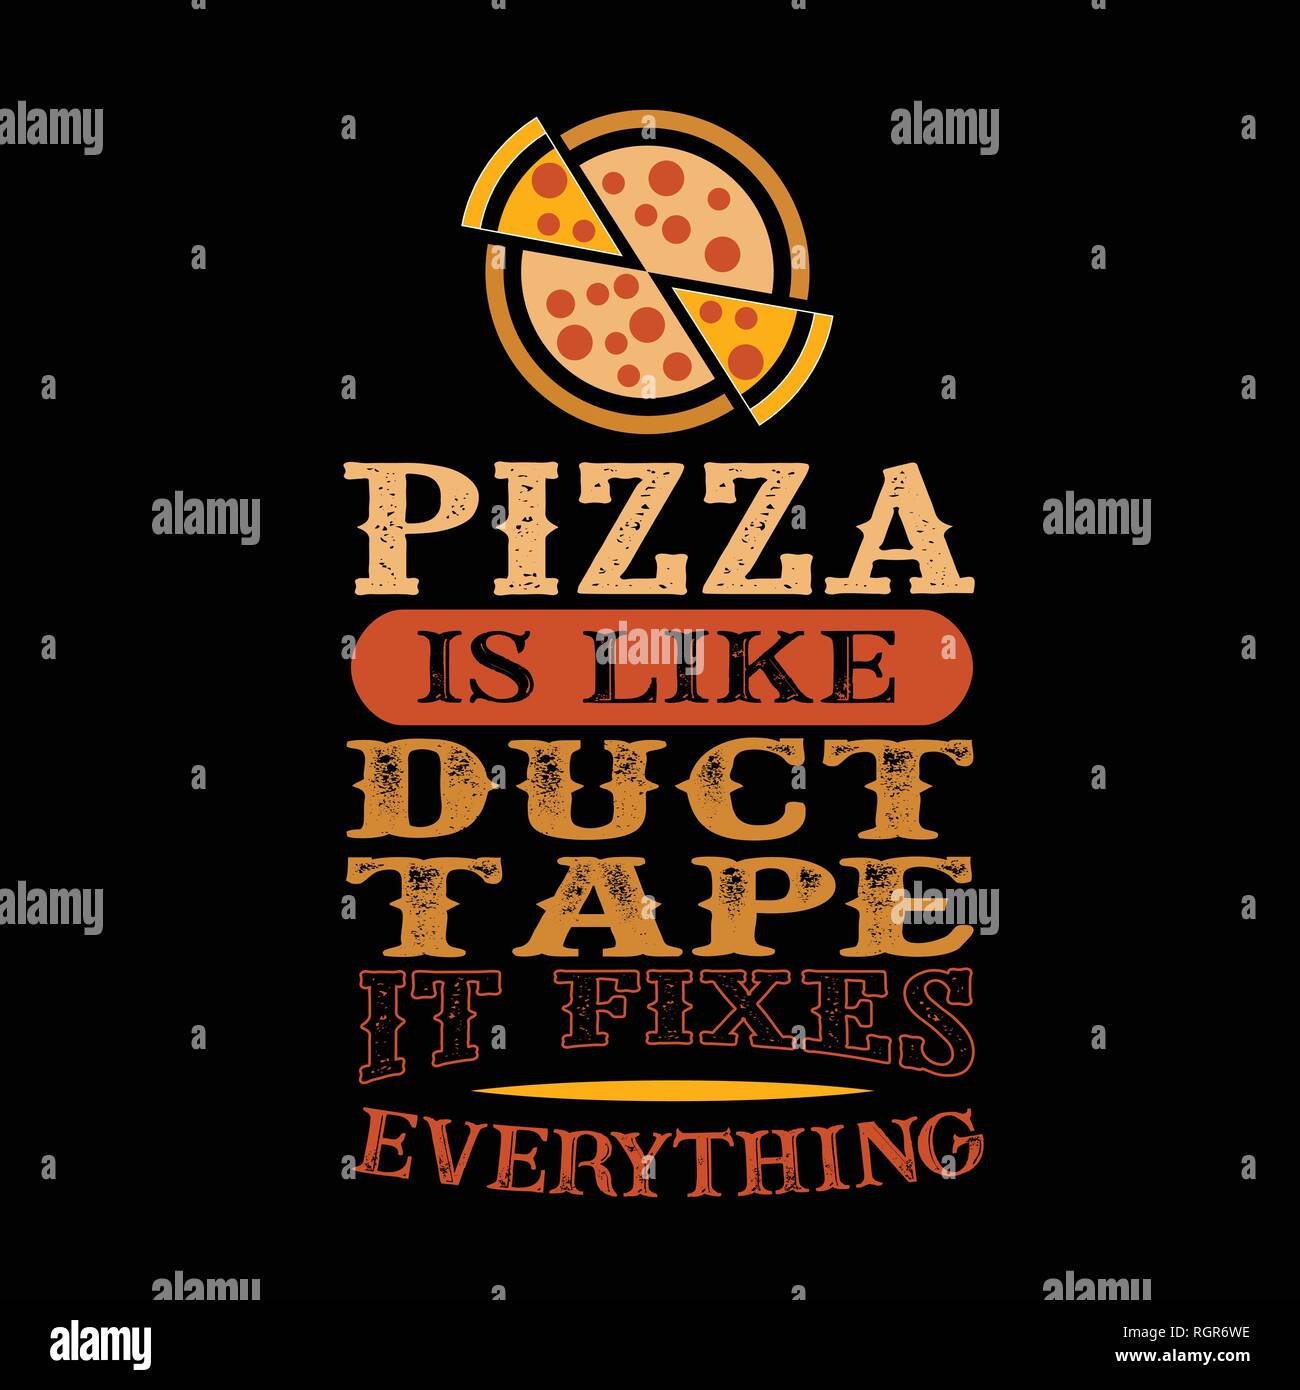 La Pizza Est Comme La Bande De Conduit Il Corrige Tout Citation De Nourriture Drole Image Vectorielle Stock Alamy